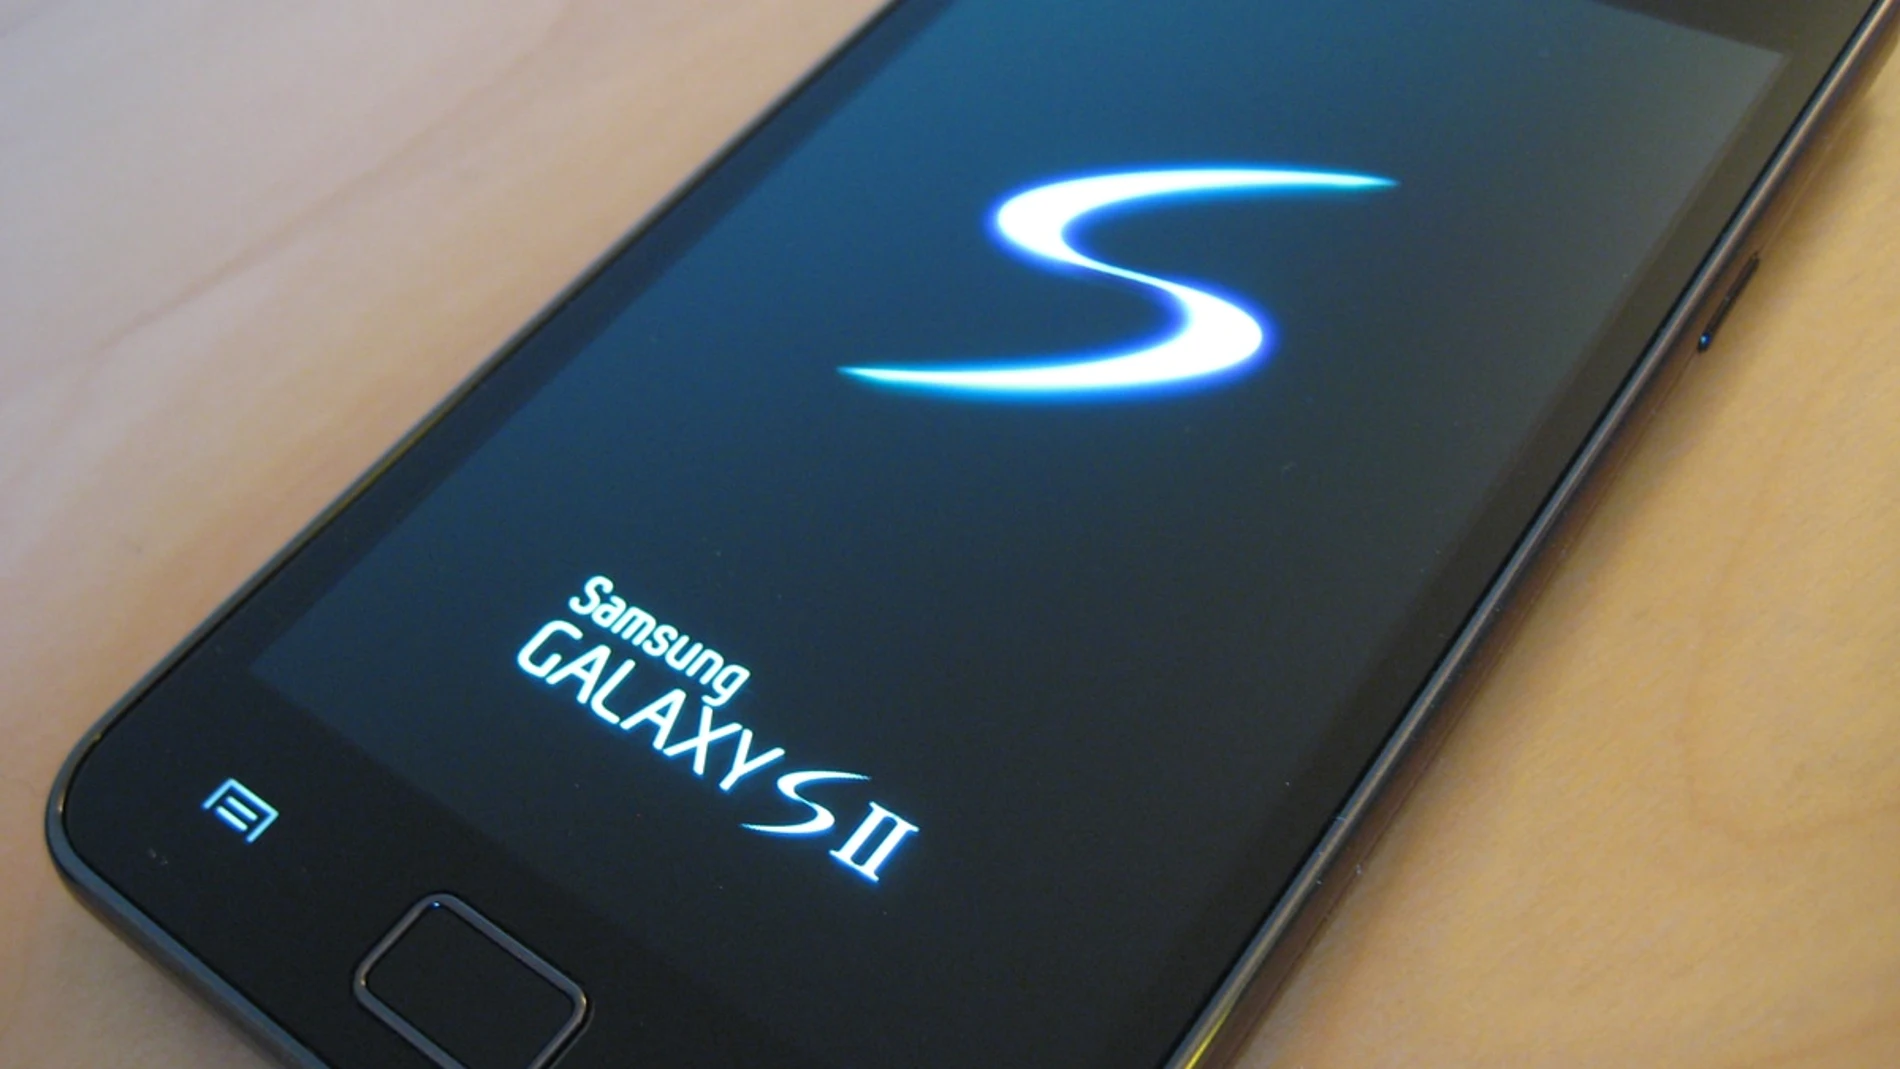 Samsung Galaxy SII fue el móvil más vendido tras su lanzamiento en 2011. Ayer, Google bloquea el acceso a sus servicios.